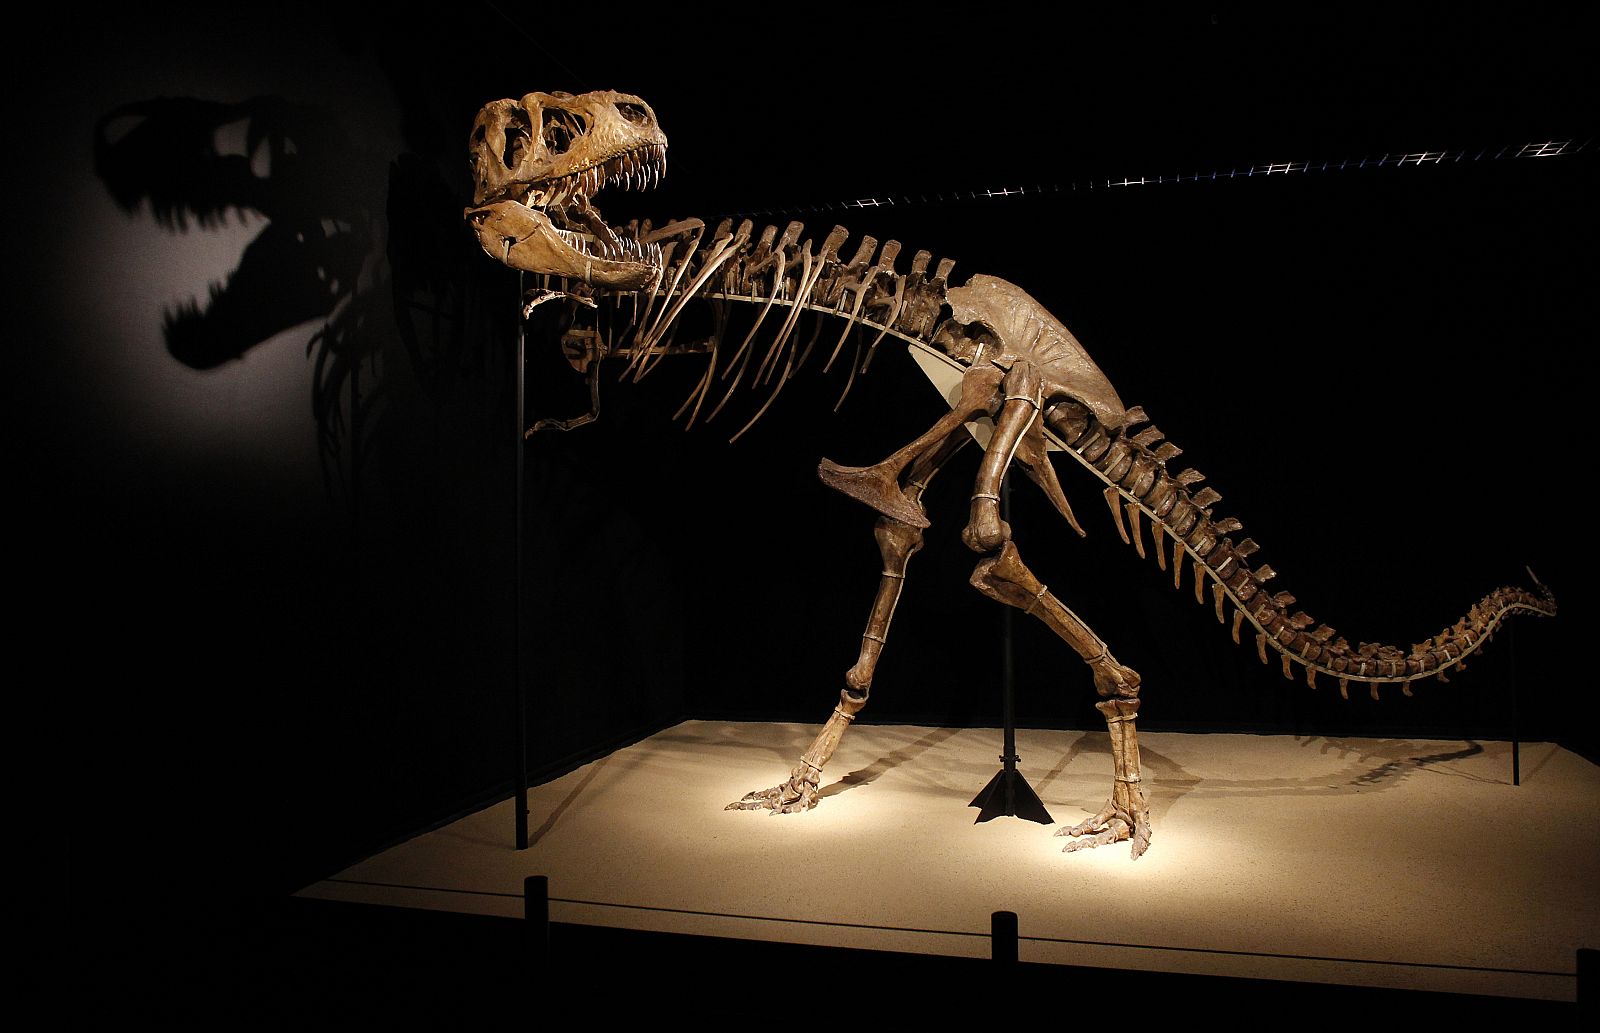 El esqueleto de un dinosaurio expuesto en una muestra